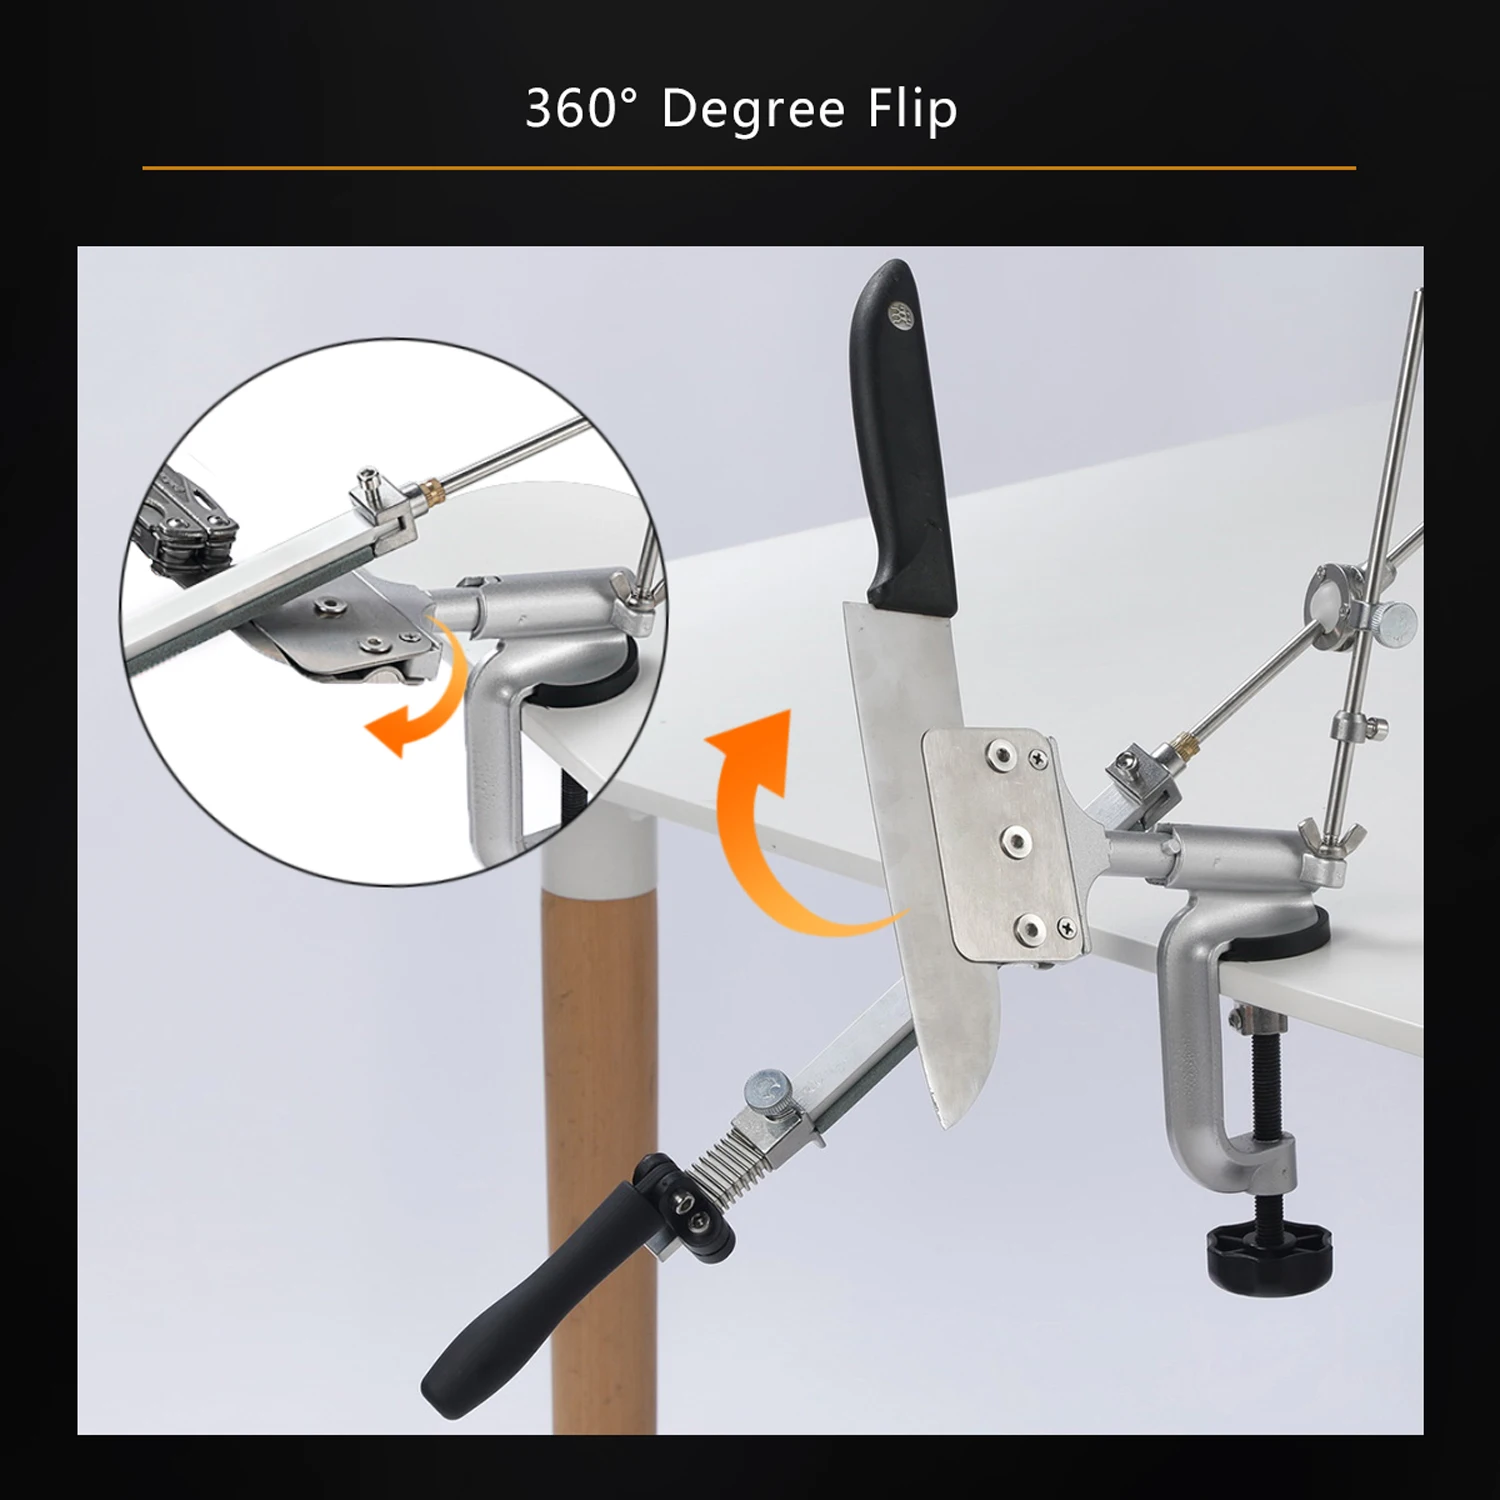 https://ae01.alicdn.com/kf/Sadbb6744db1a4c7c9c1c1add3f5faa7bz/Fixed-Angle-Knife-sharpener-Portable-360-Degree-Flip-fuction-G-clip-Fixed-With-Oil-diamond-whetstone.jpg